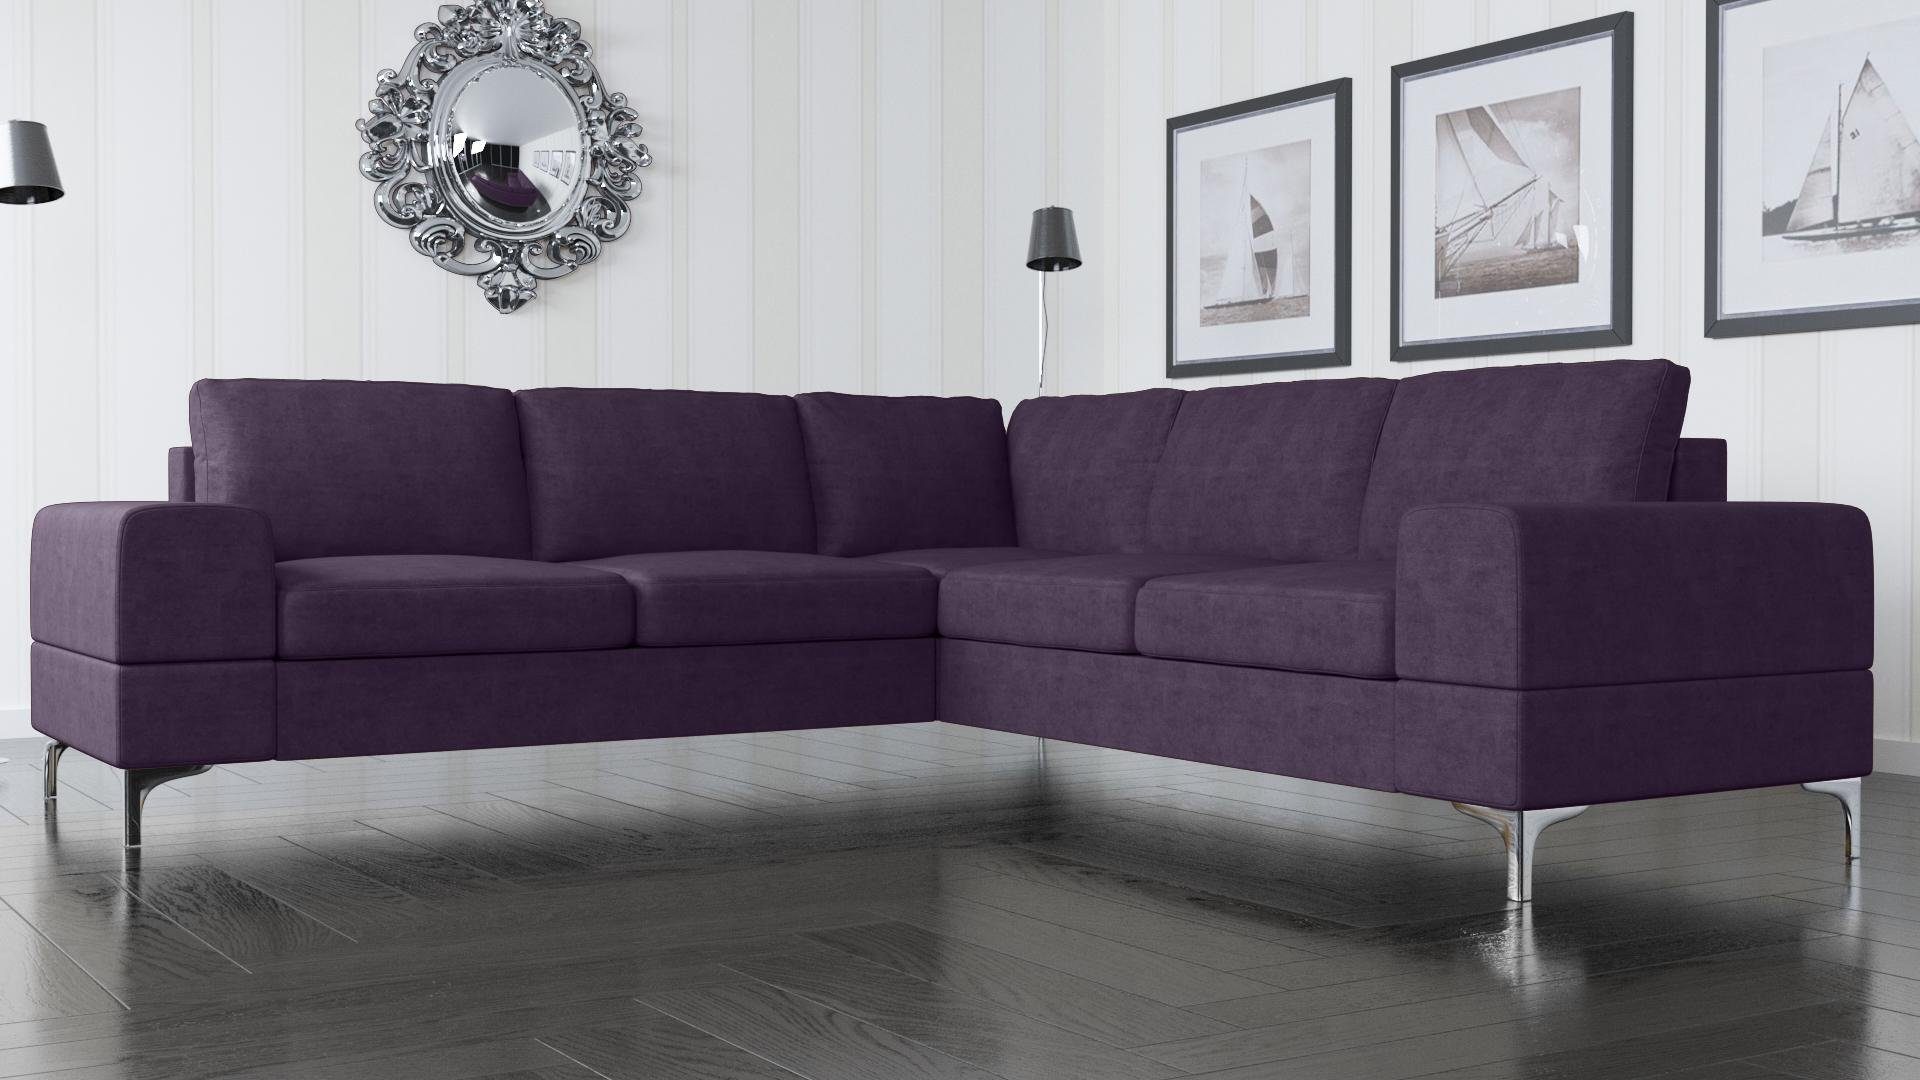 JVmoebel Ecksofa, Couch Ecksofa Textil Wohnzimmer Design Modern L-Form Türkis Möbel Lila | Ecksofas